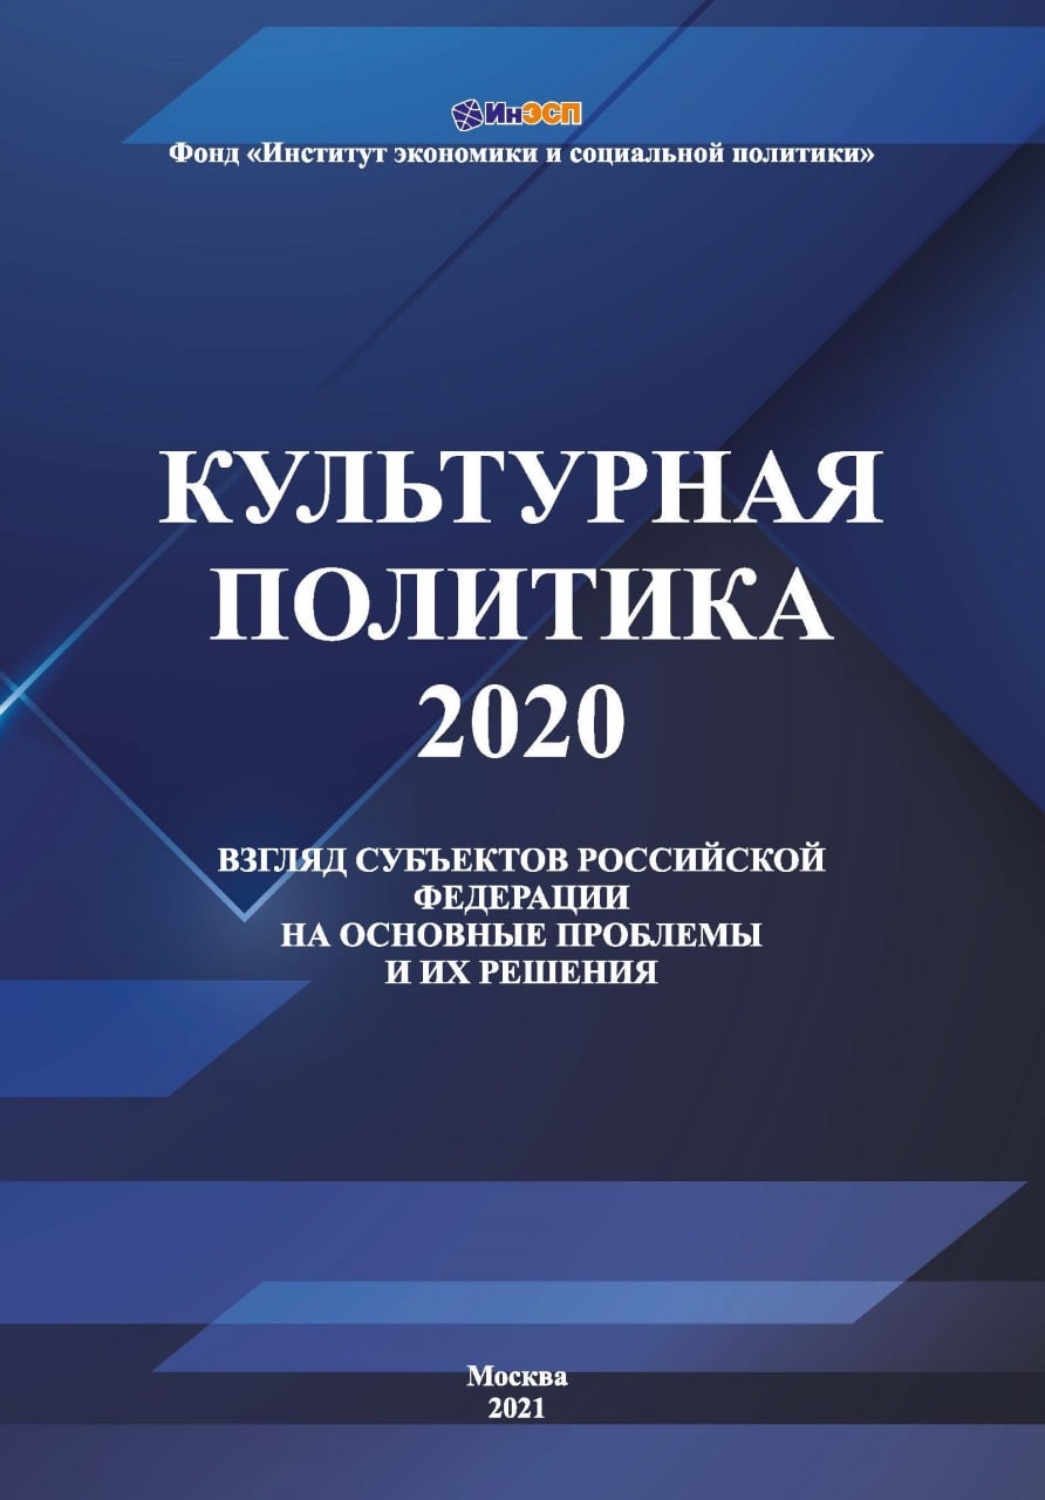 Изменения в политике 2020